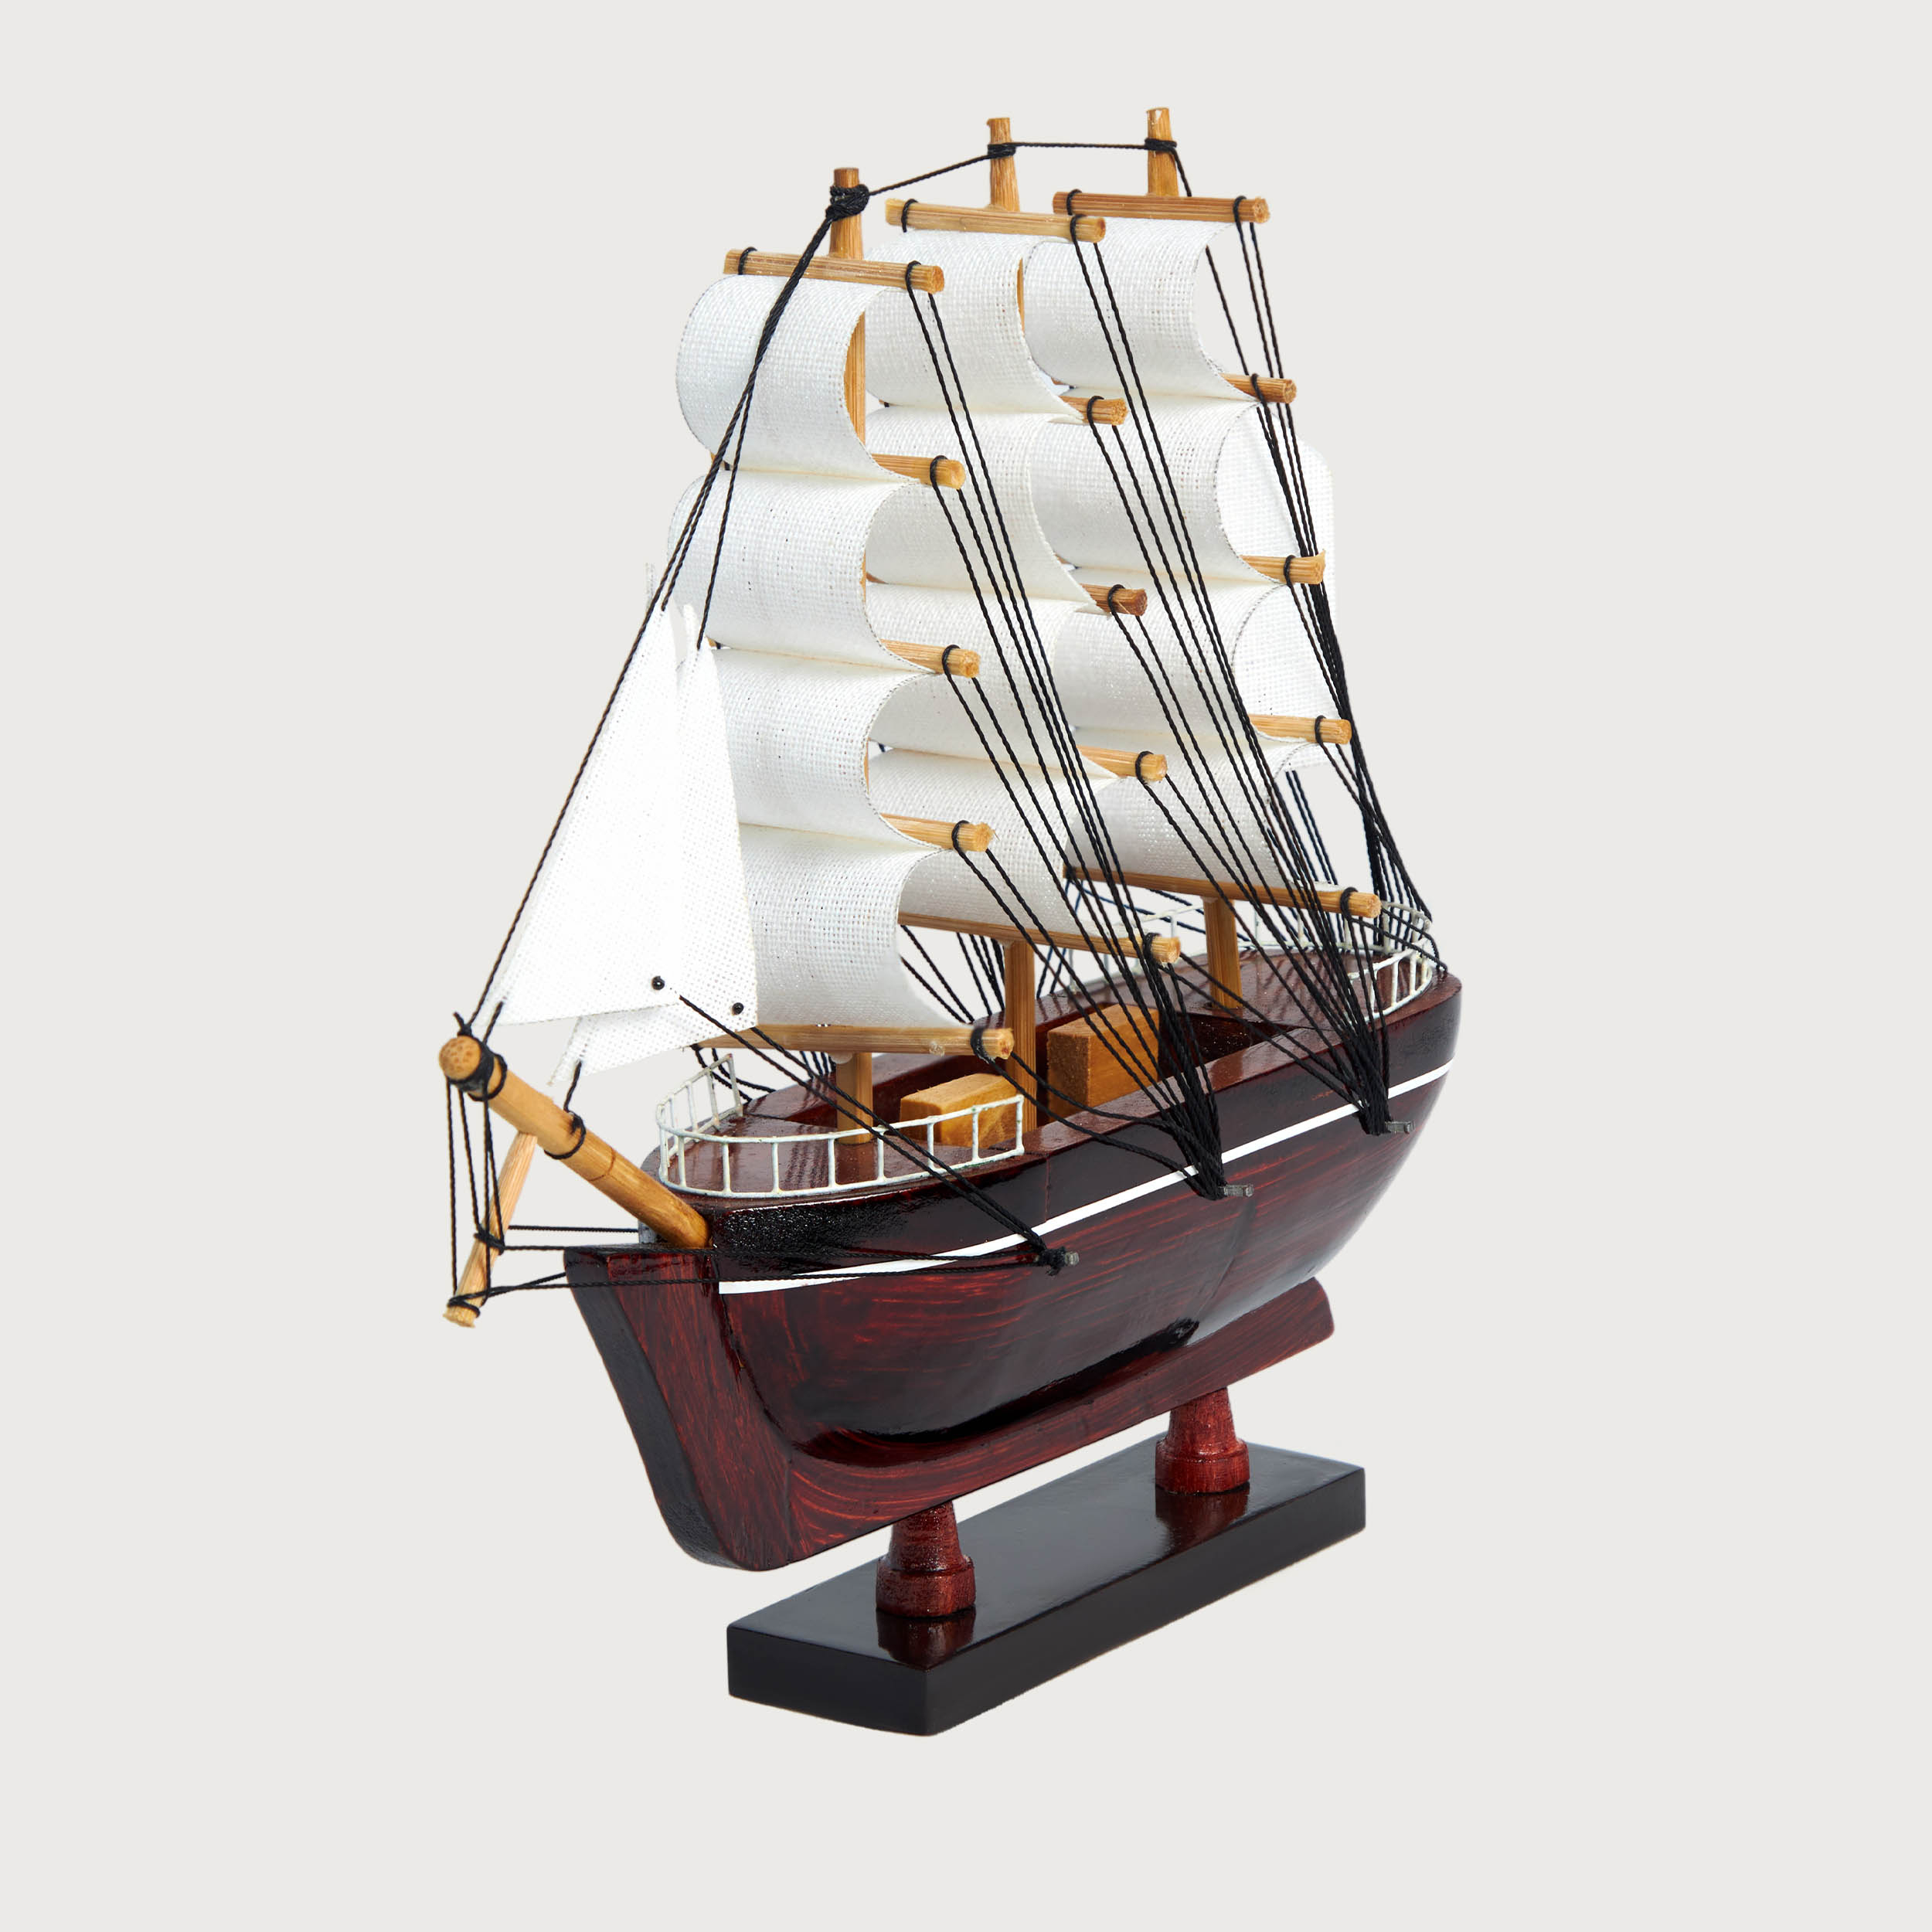 Mô hình thuyền cổ BELEM cao cấp, gỗ tự nhiên, lắp ráp sẵn bằng gỗ tự nhiên cao cấp sang trọng